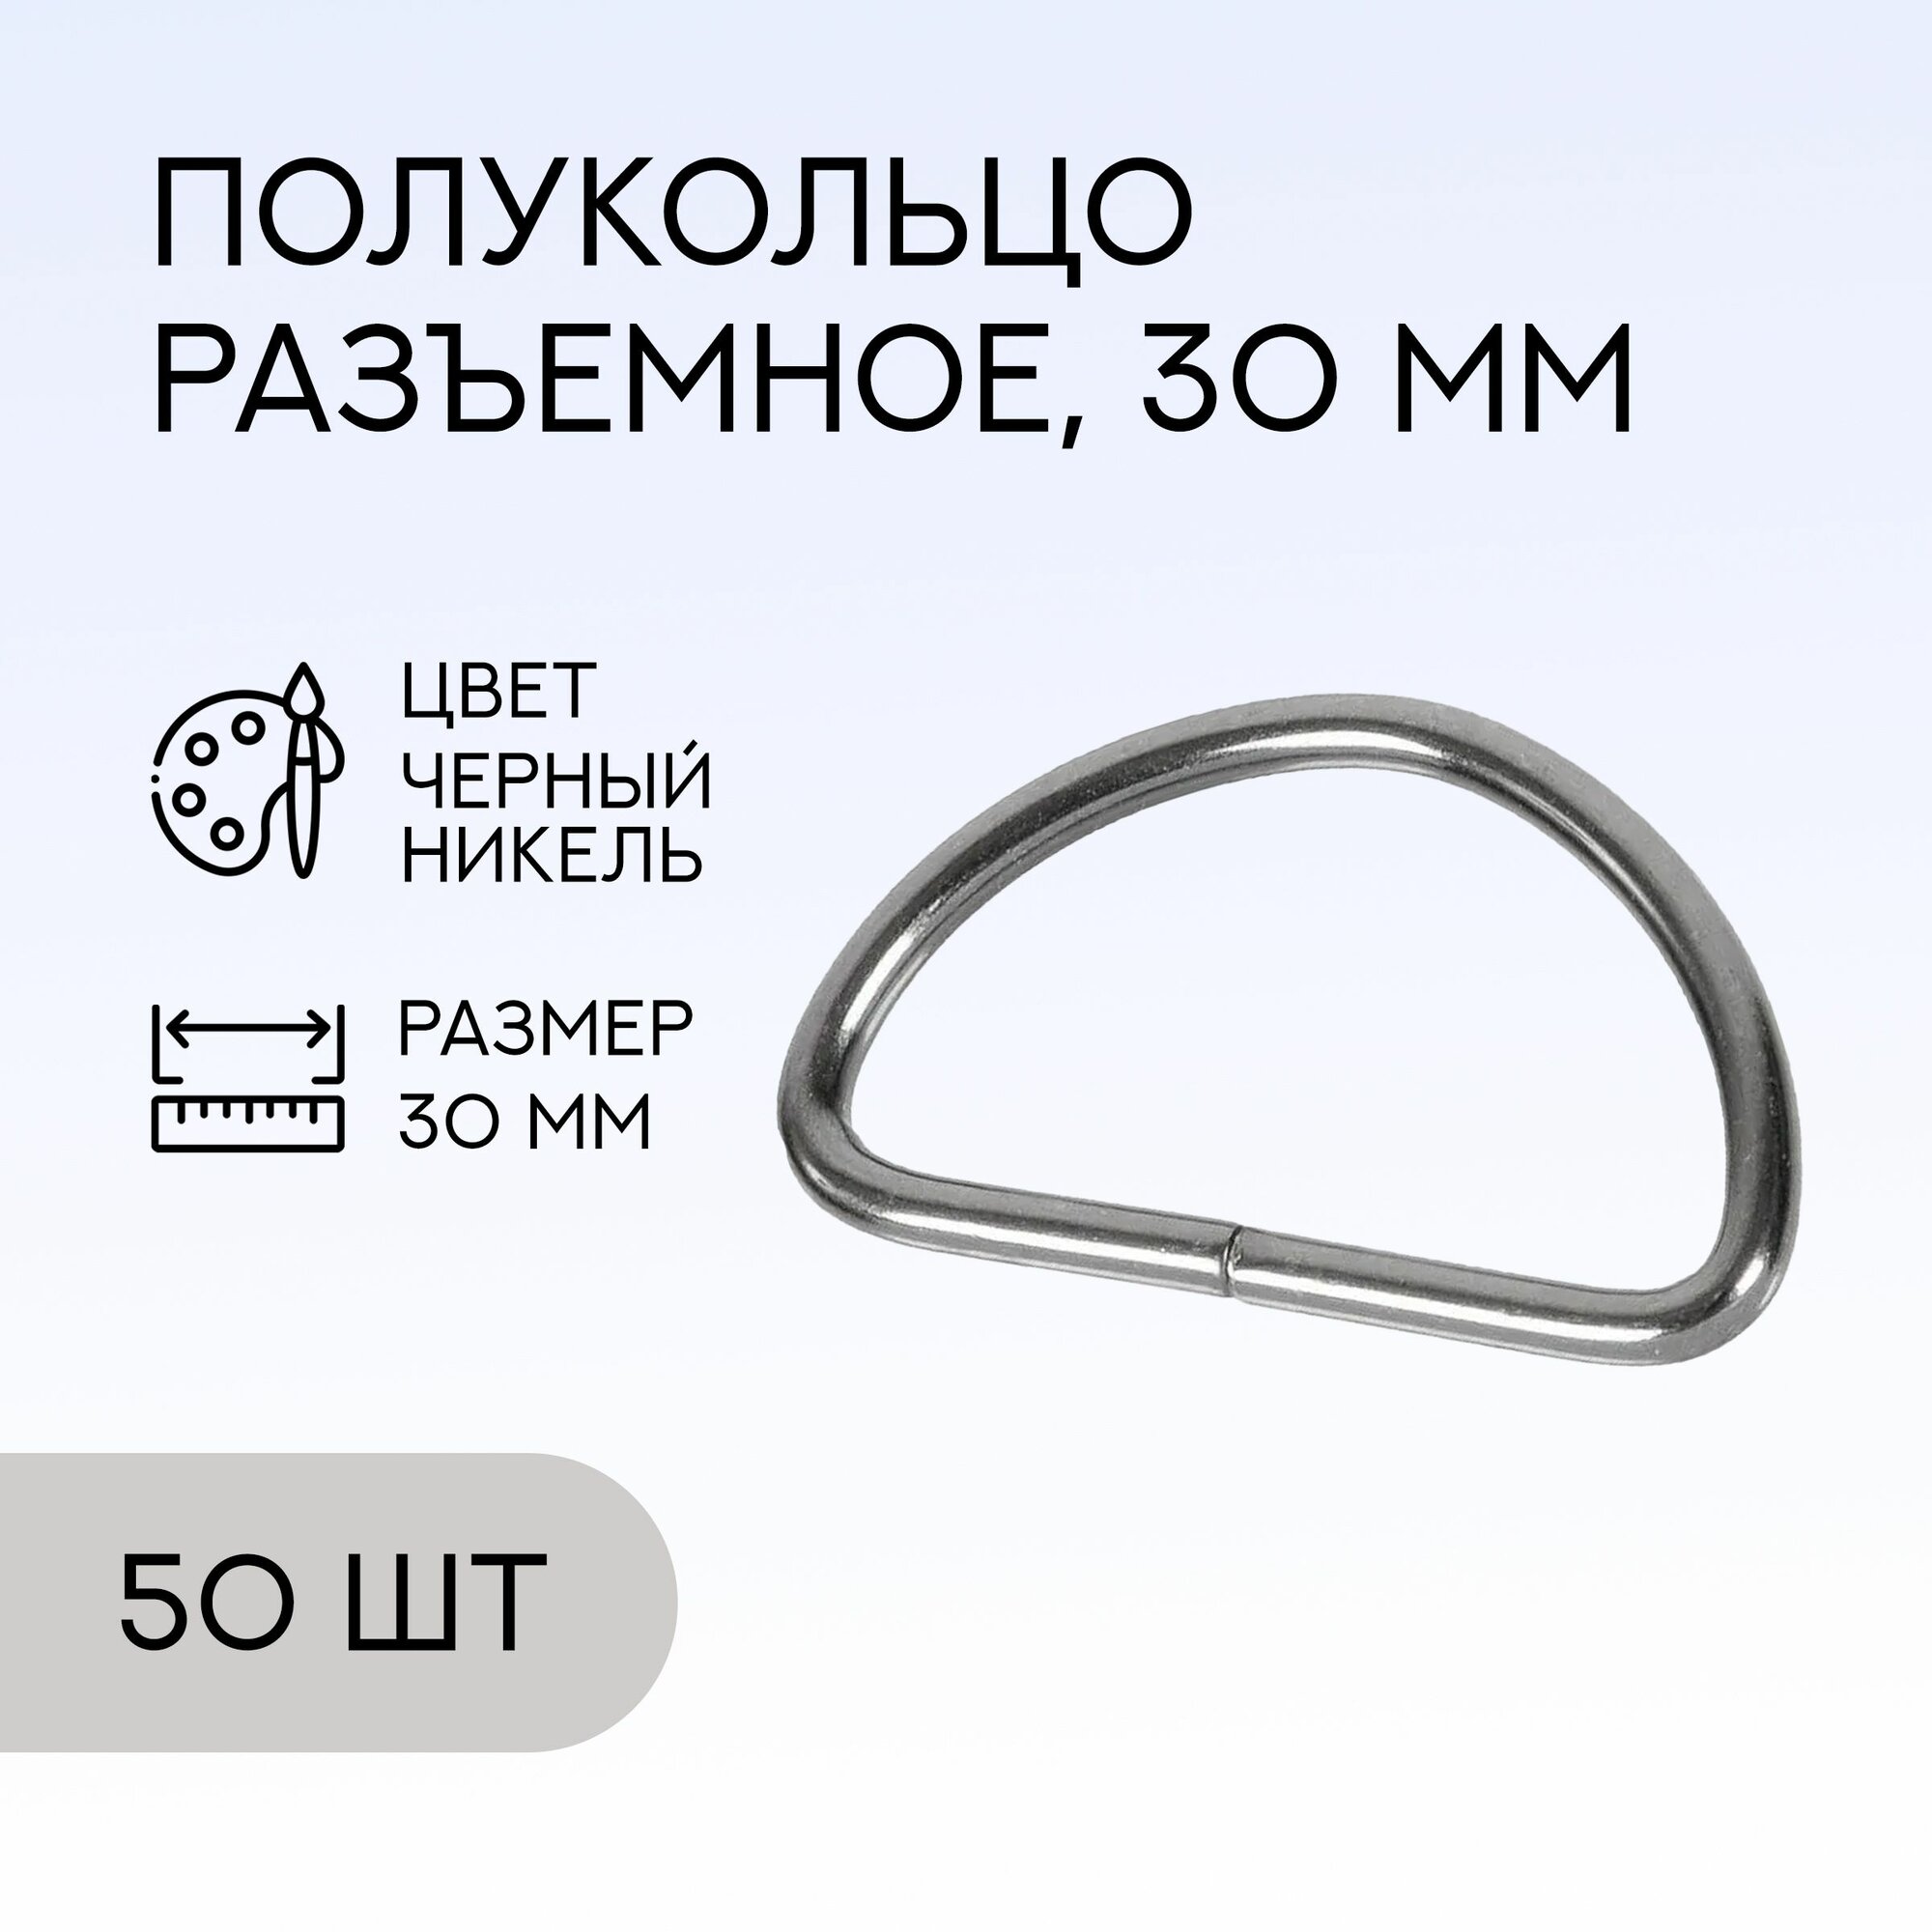 Полукольцо разъемное, 30 мм, черный никель, 50 шт. / кольцо для сумок и рукоделия / FG-146777_50